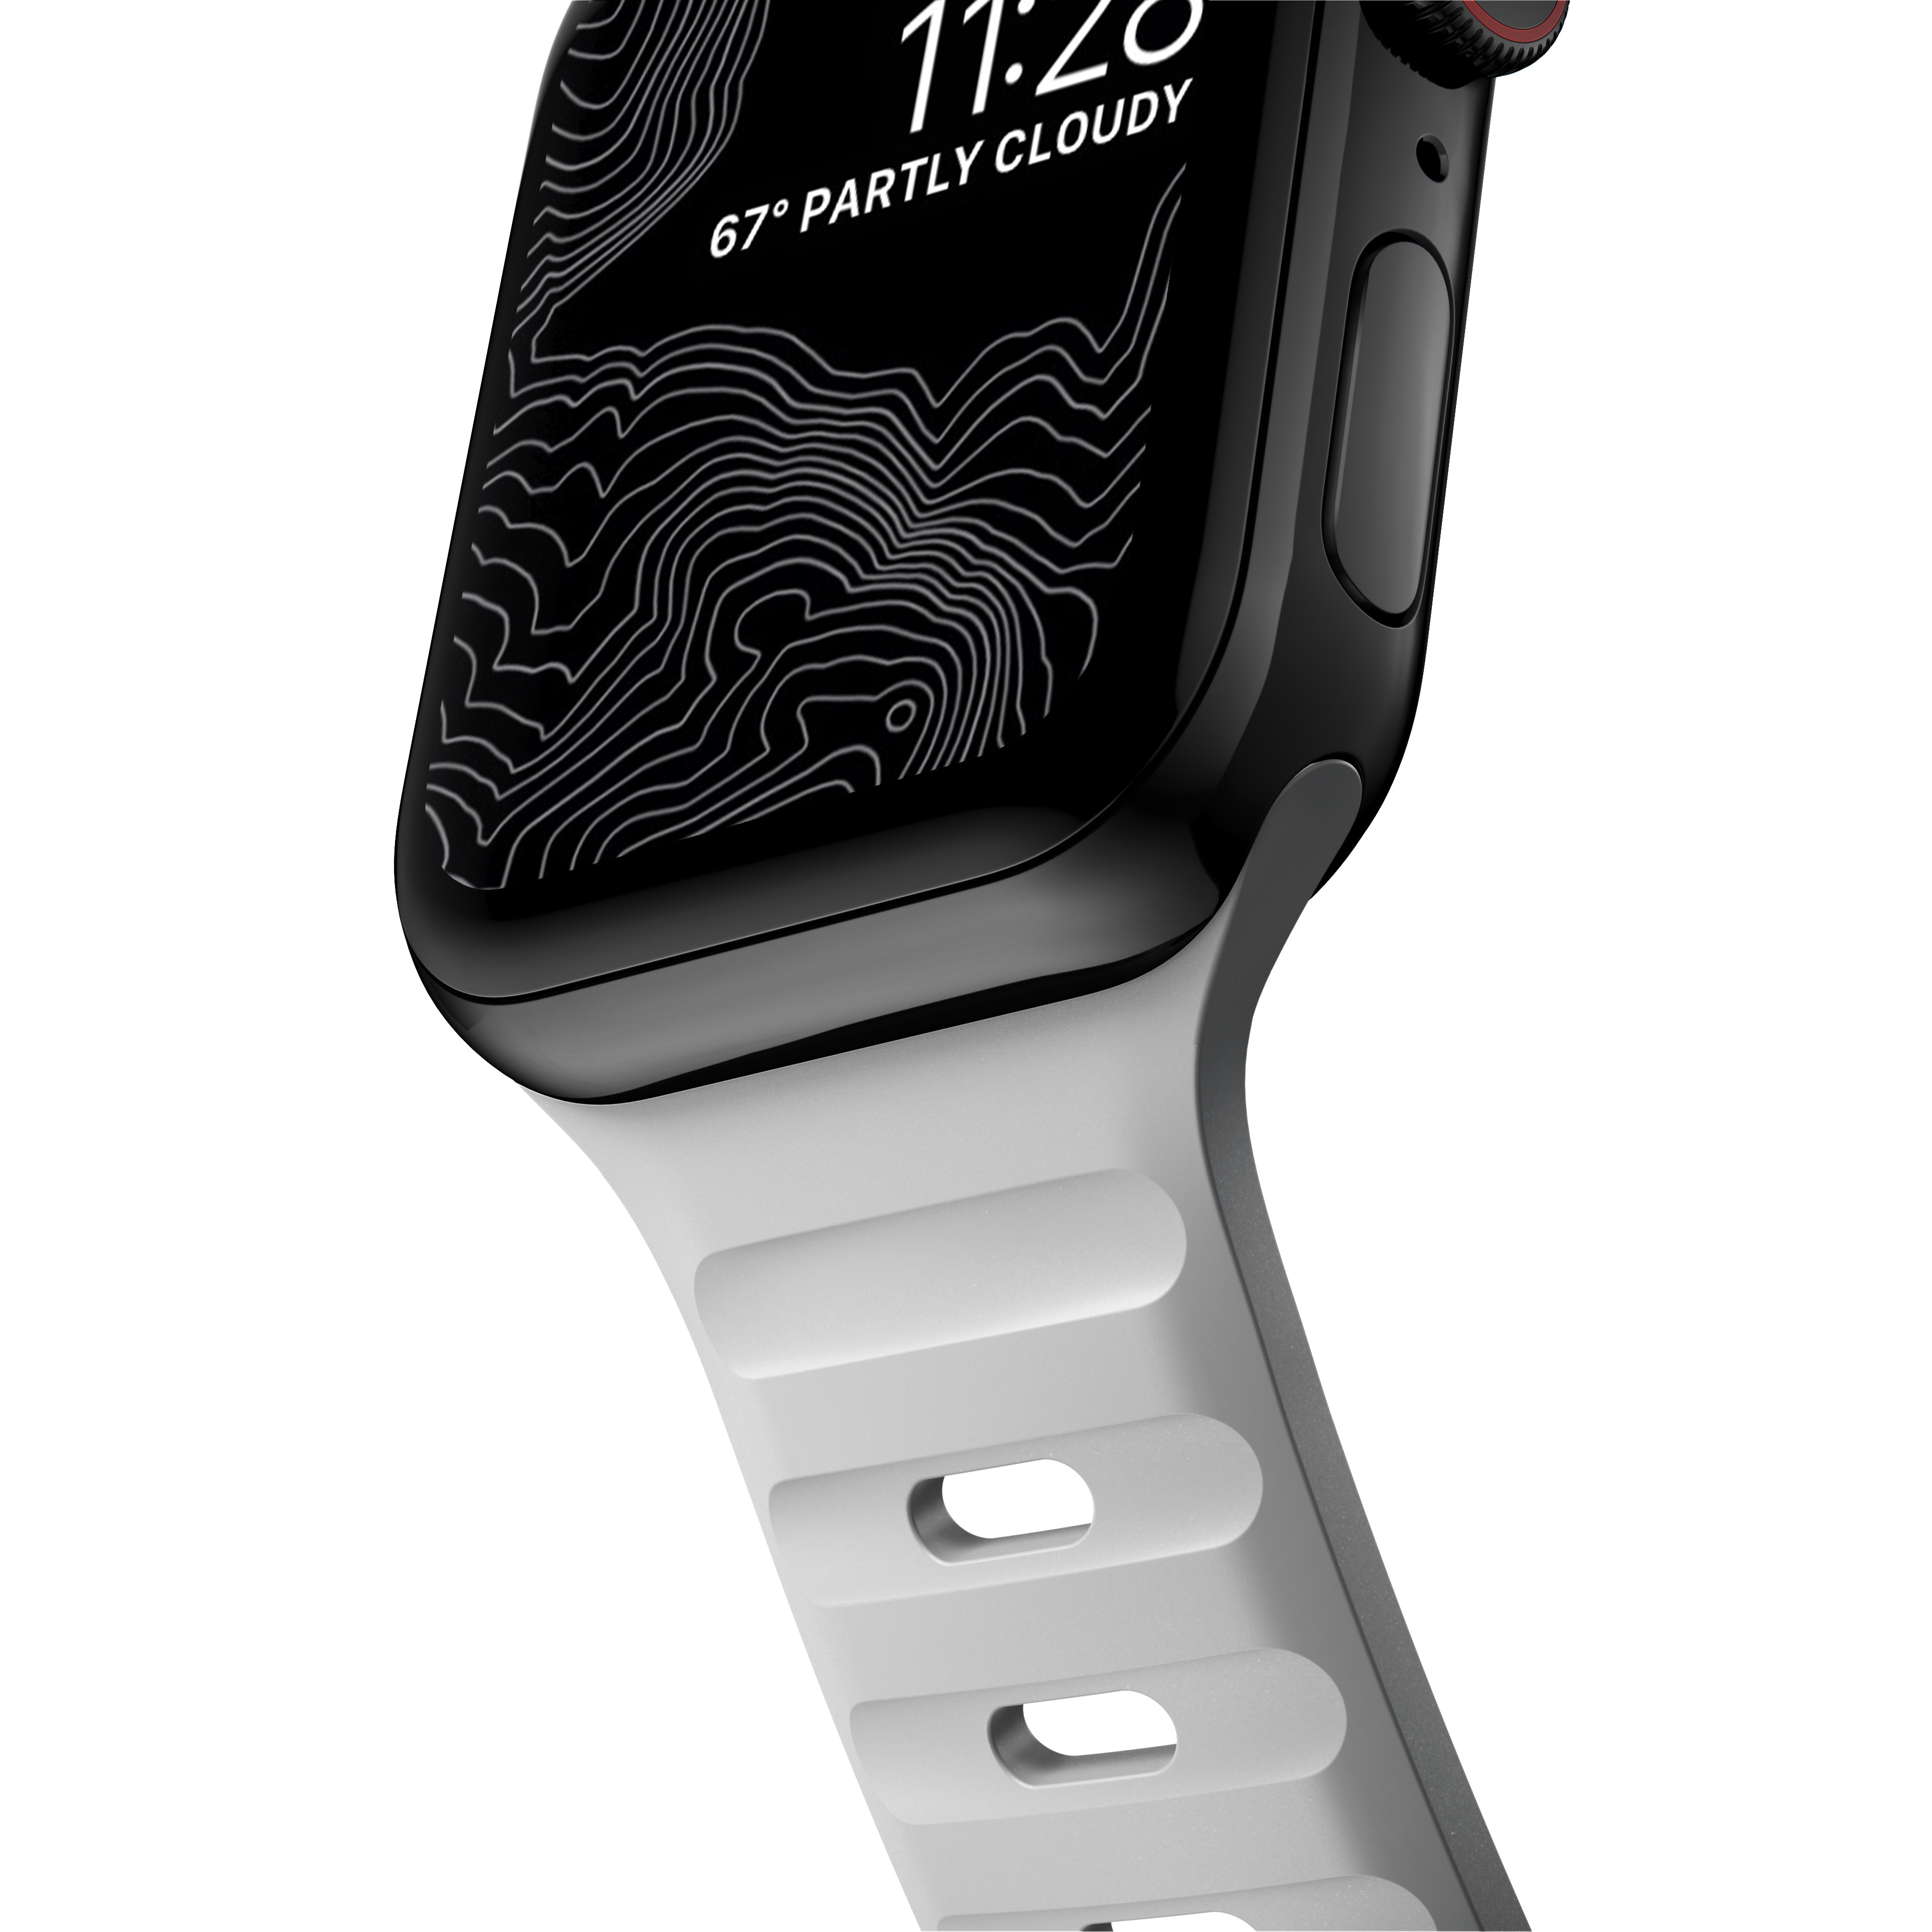 Apple Watch 40mm Sport Band Lunar Gray